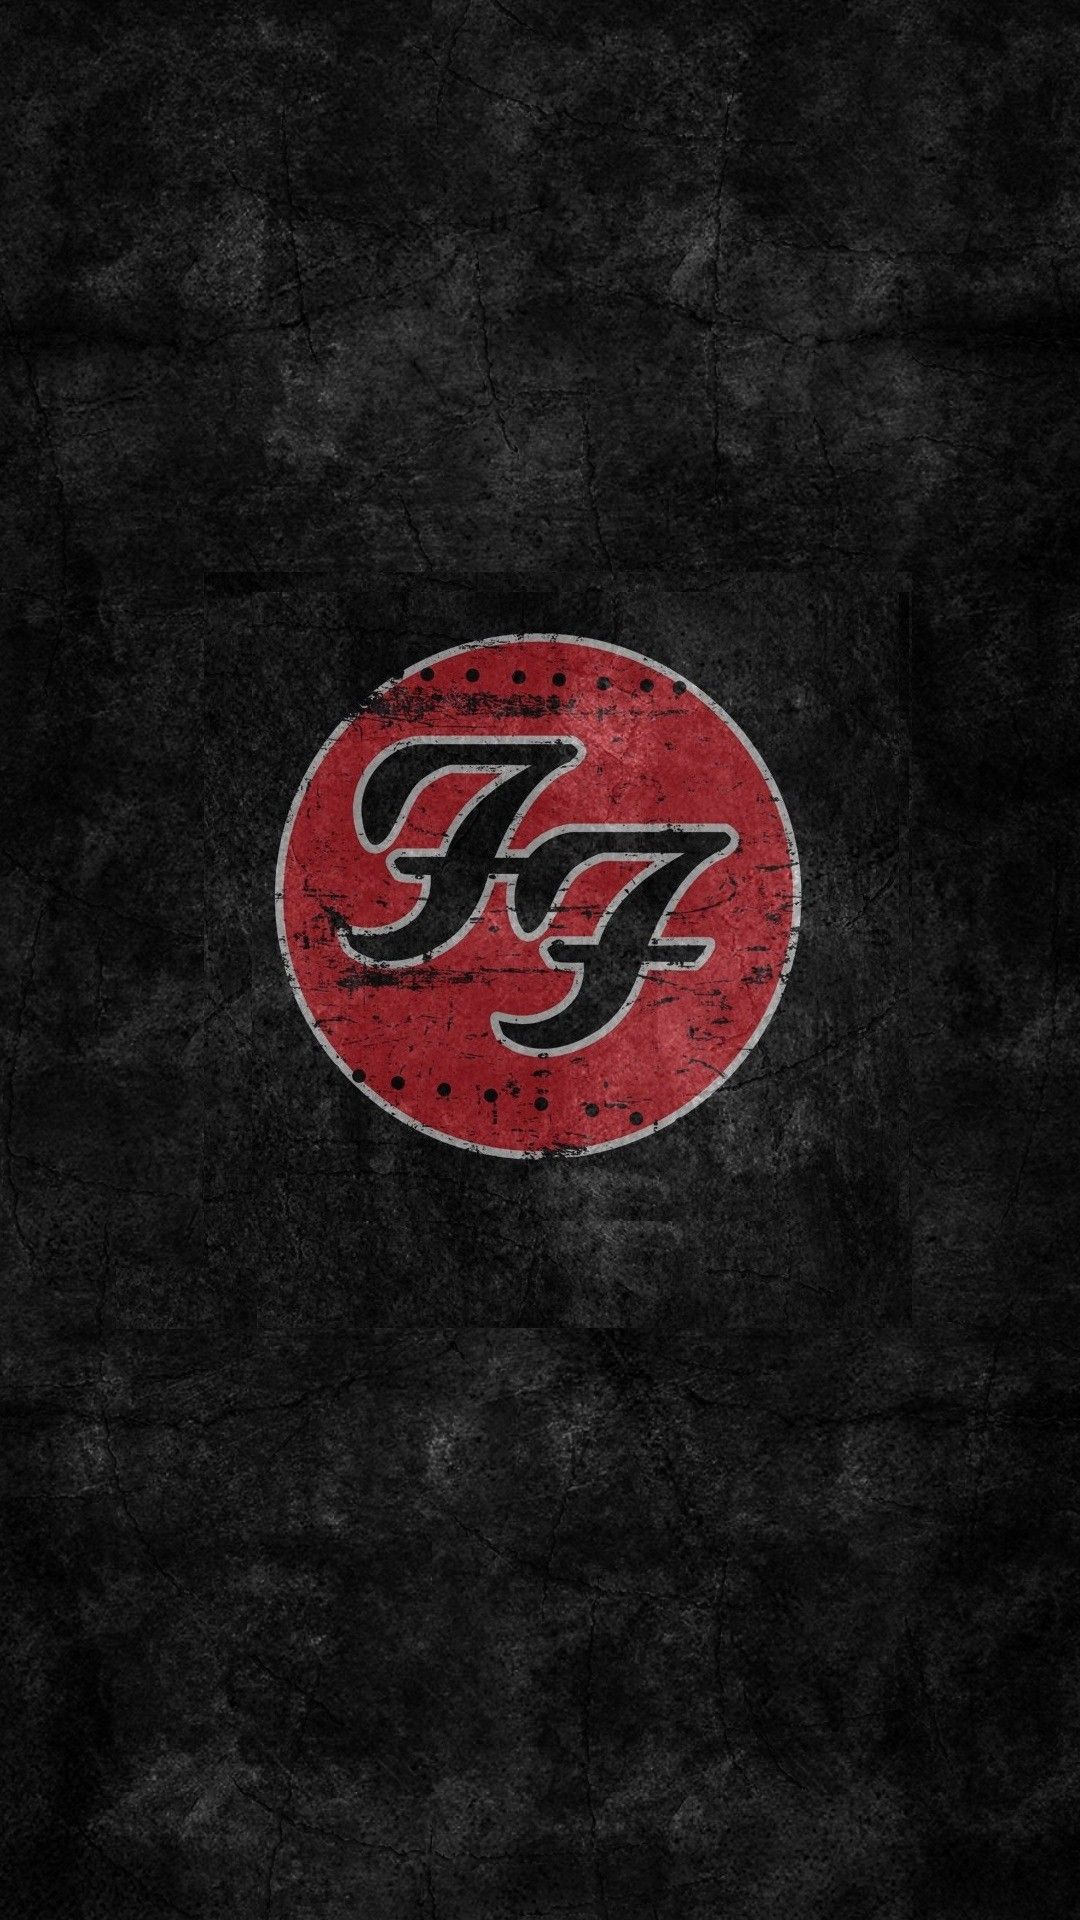 Hd wallpaper foo fighters logo